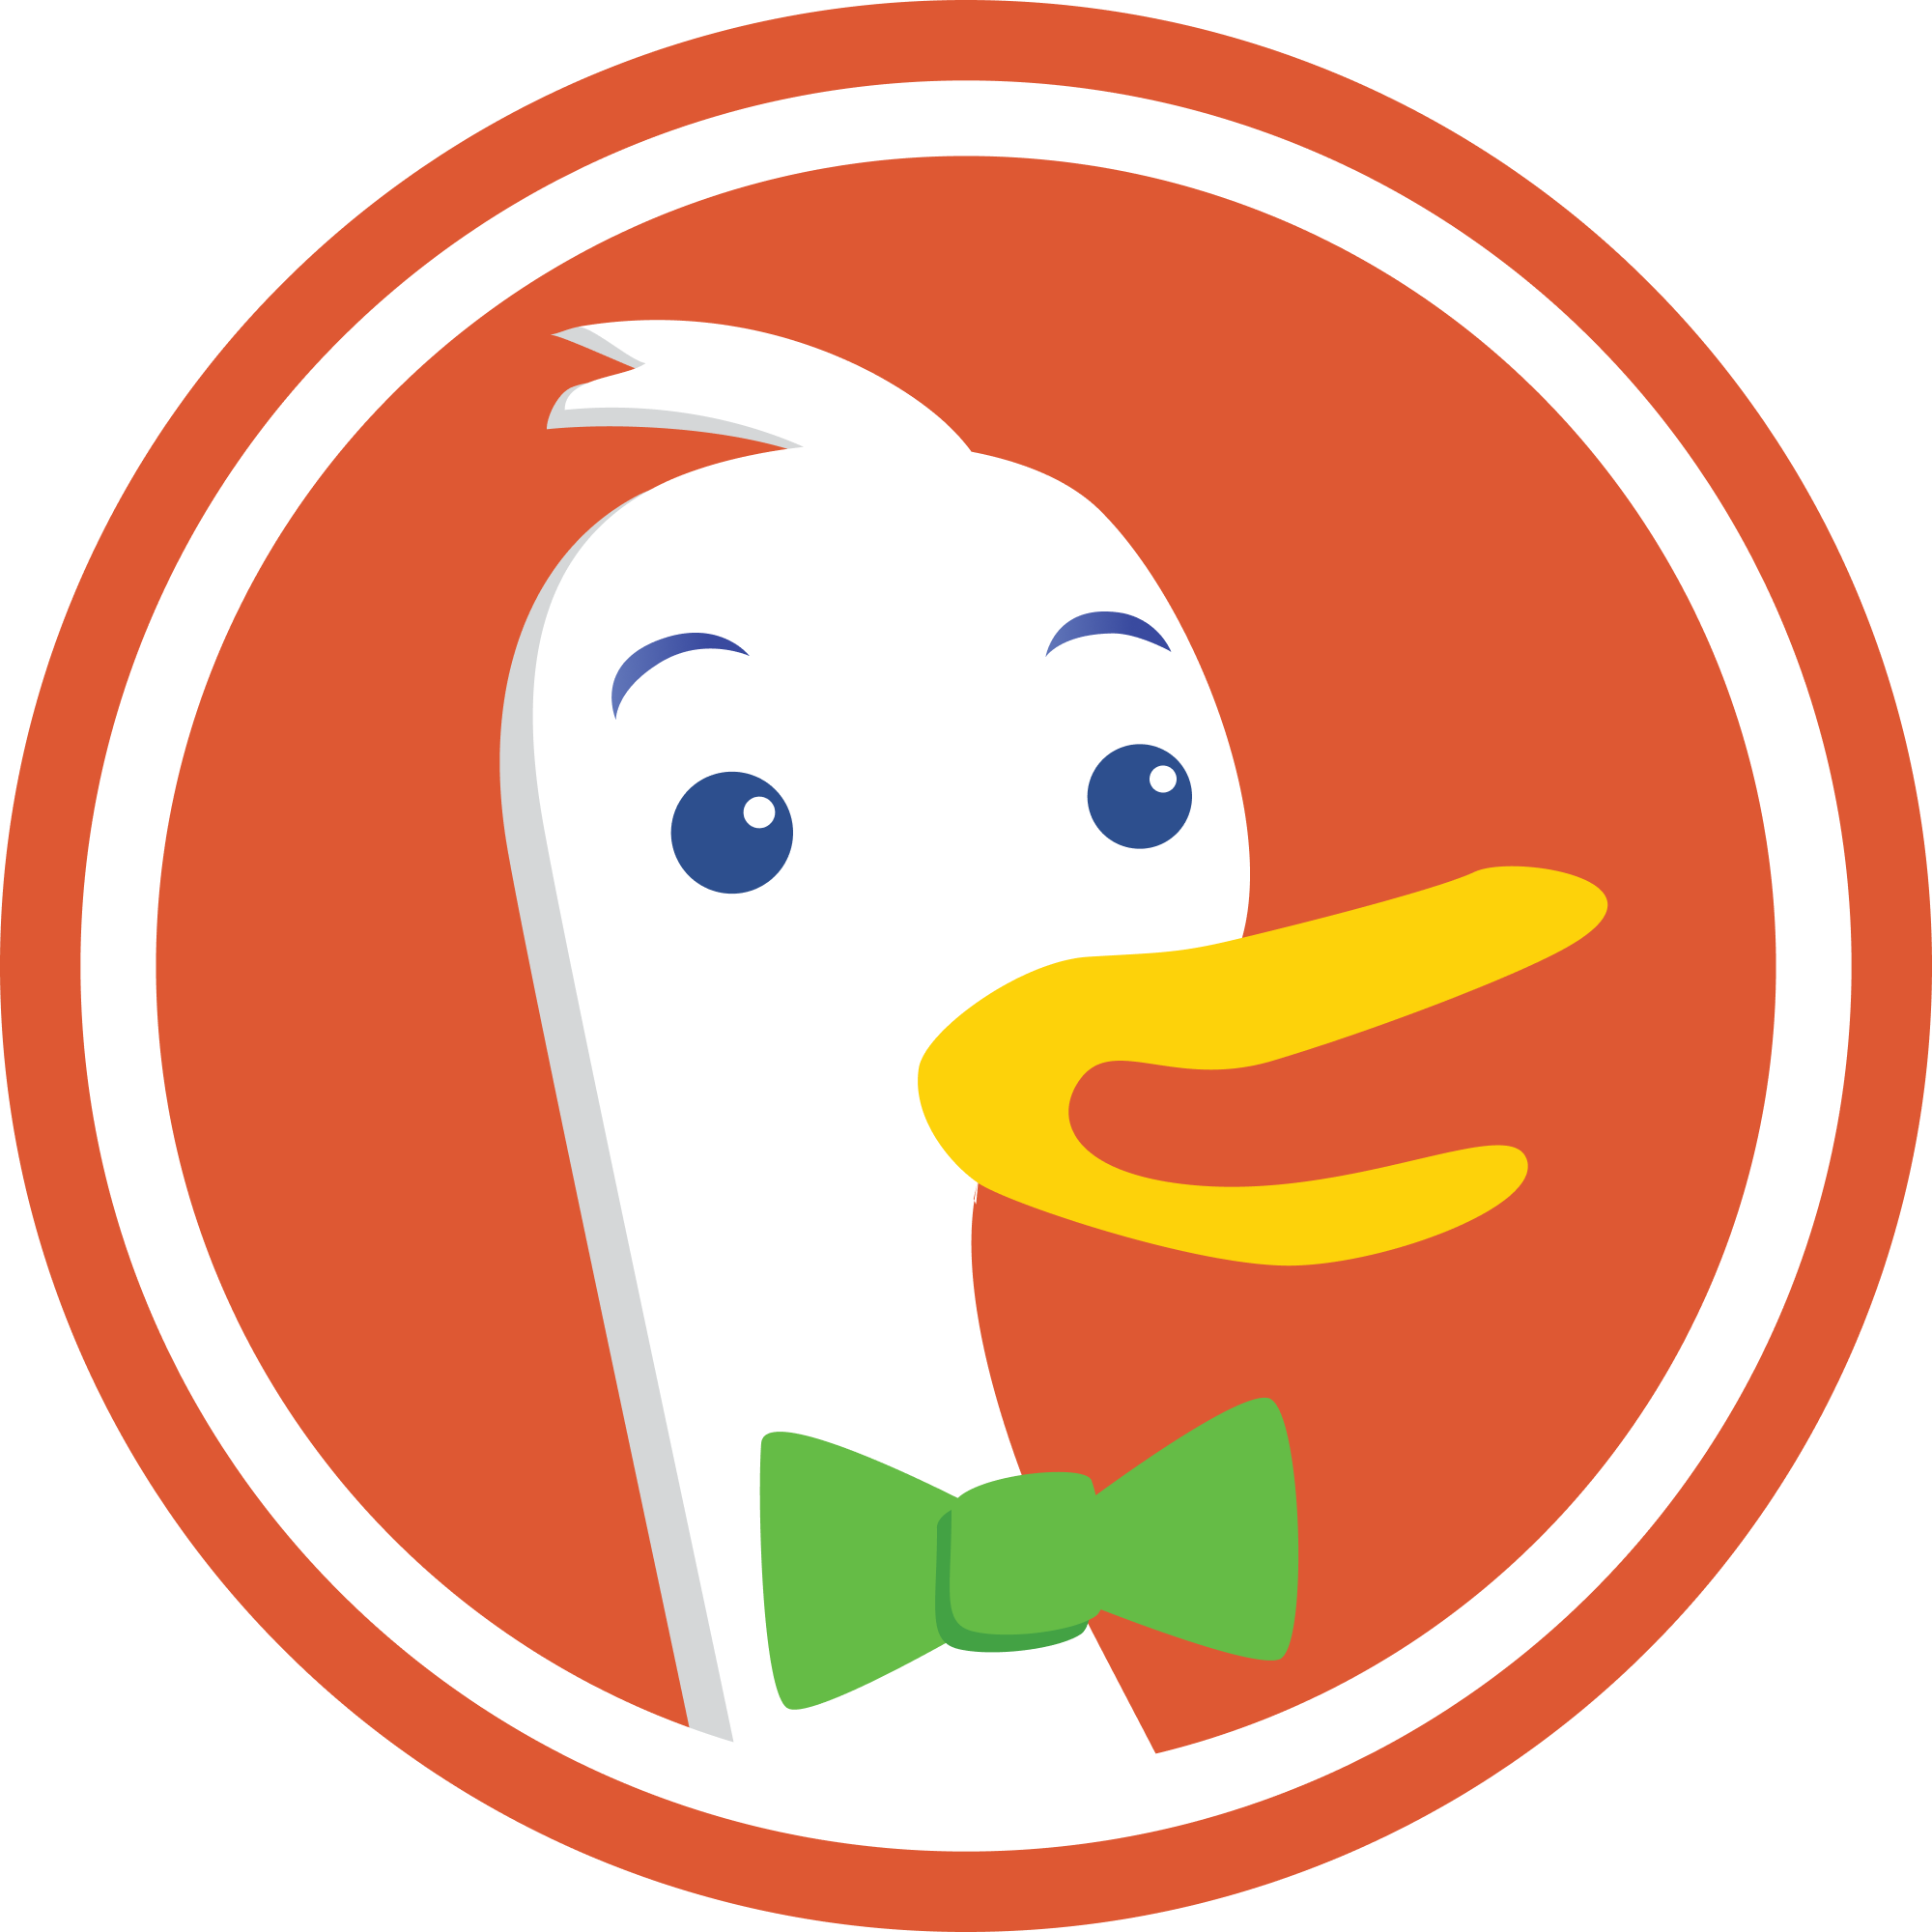 The_DuckDuckGo_Duck